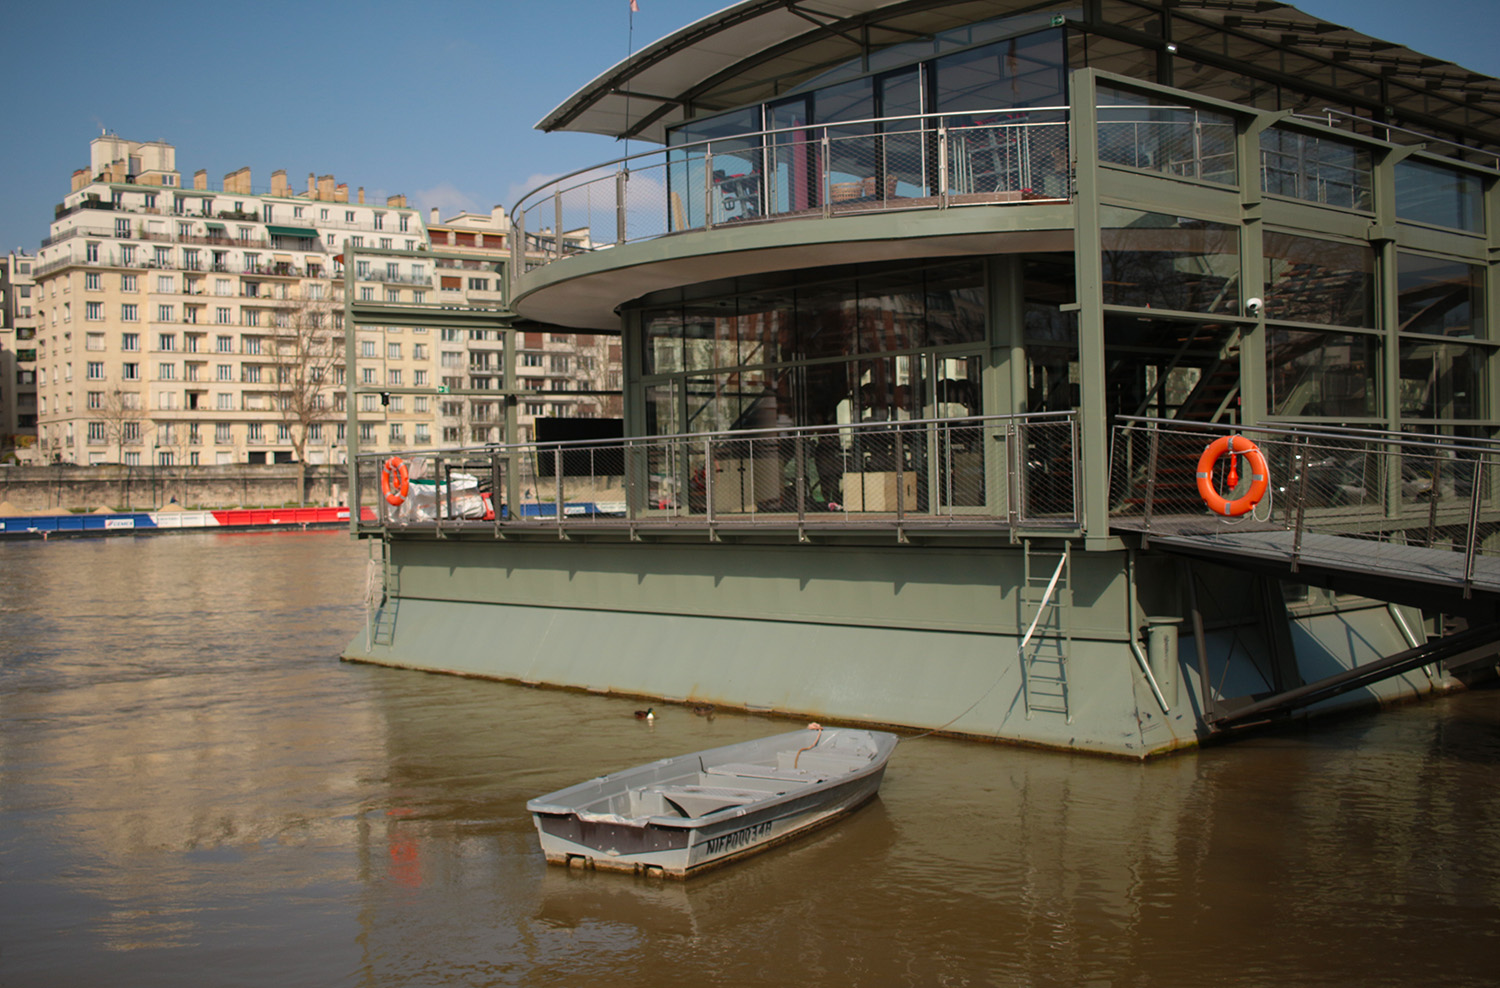 Il s’agit de l’un des nombreux pièges à déchets installés sur la Seine, qui permet de capter et ramasser les déchets jetés ou échoués dans le lit du fleuve © Globe Reporters